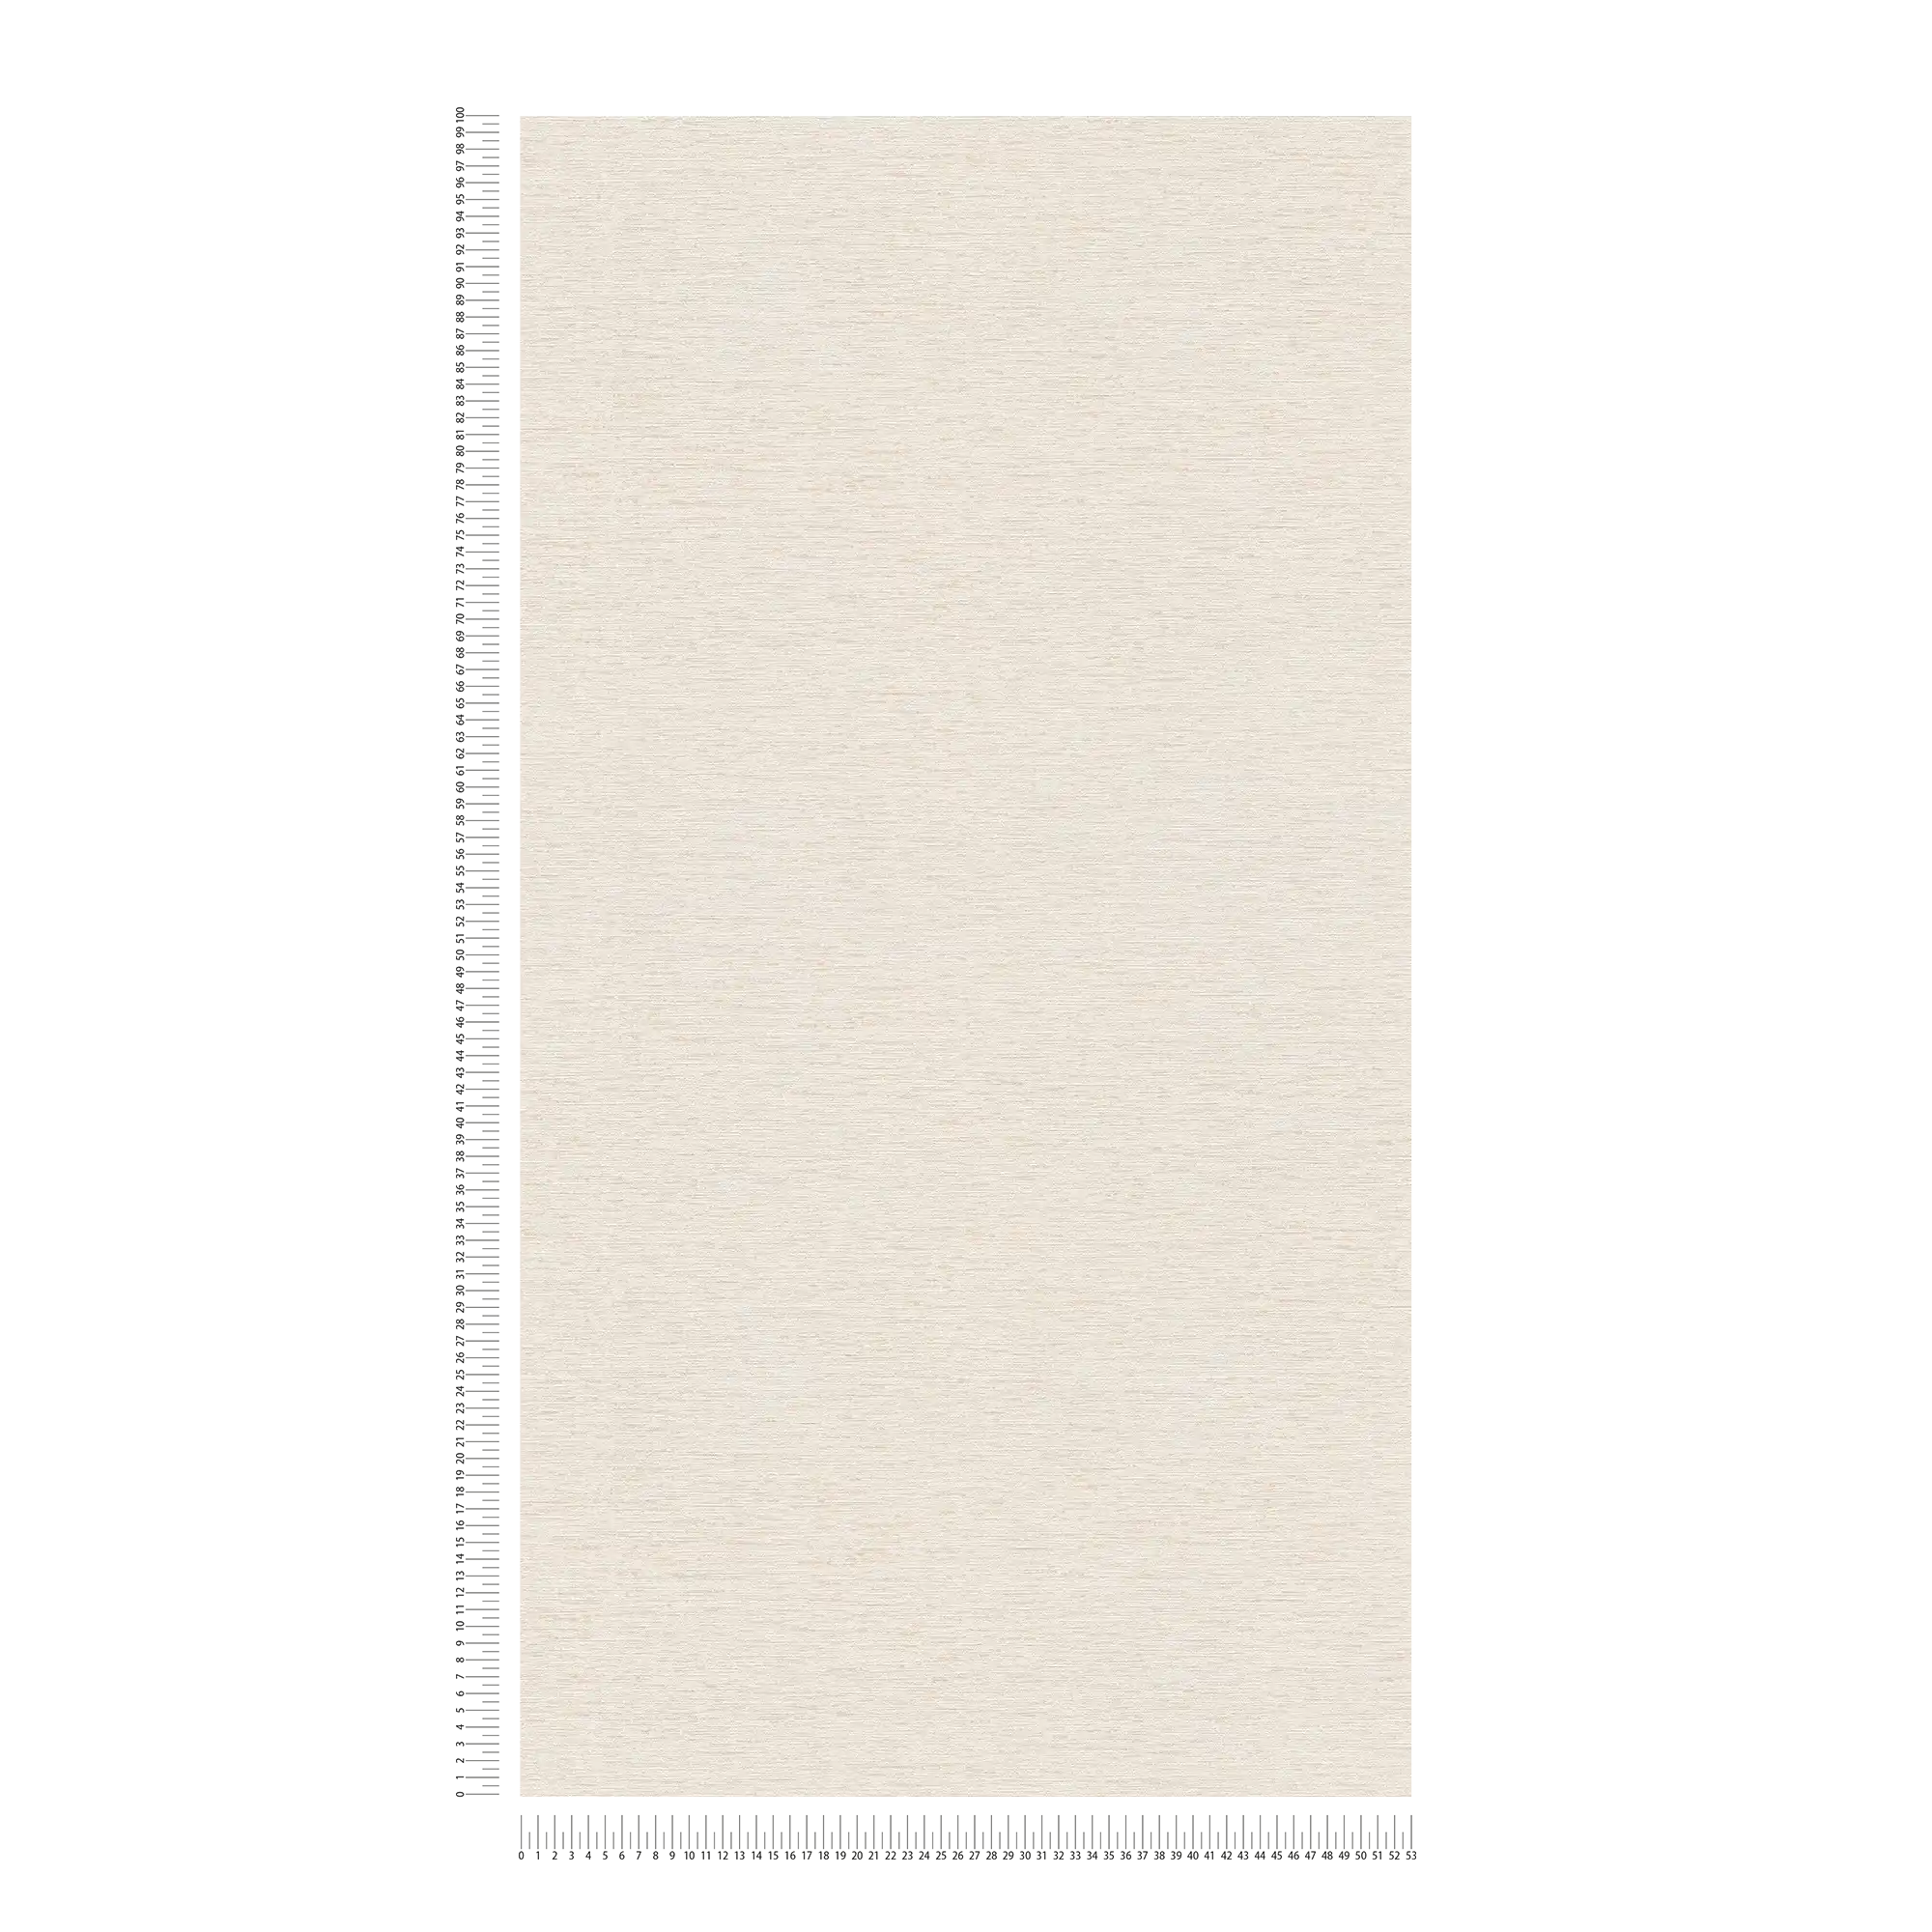             Einfarbige Tapete mit Gewebestruktur, matt – Creme, Weiß, Beige
        